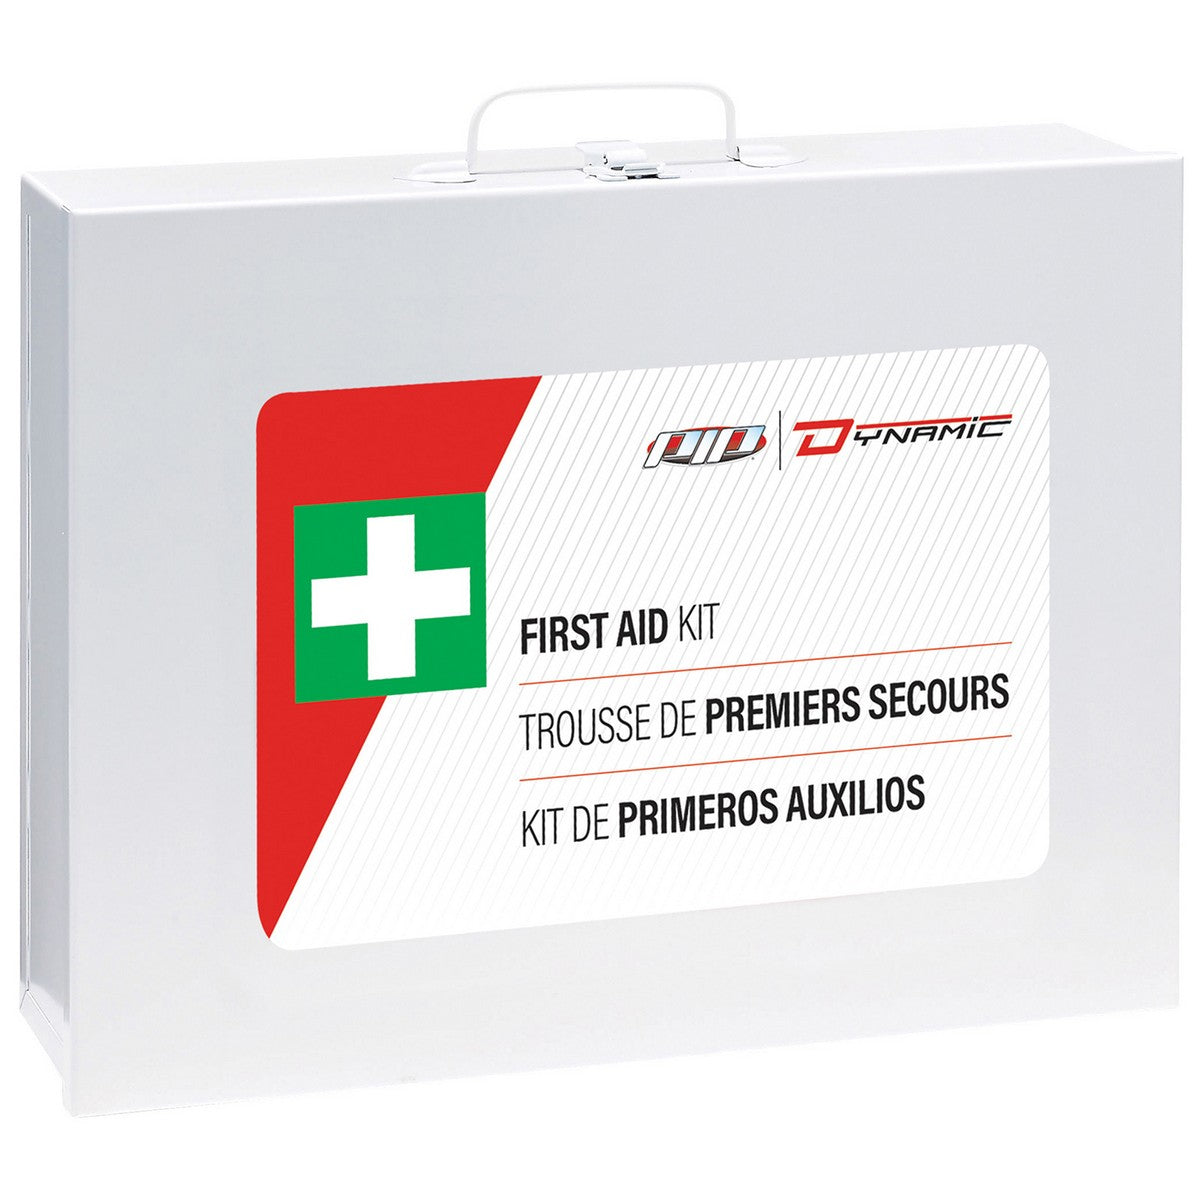 CSA First Aid Kits